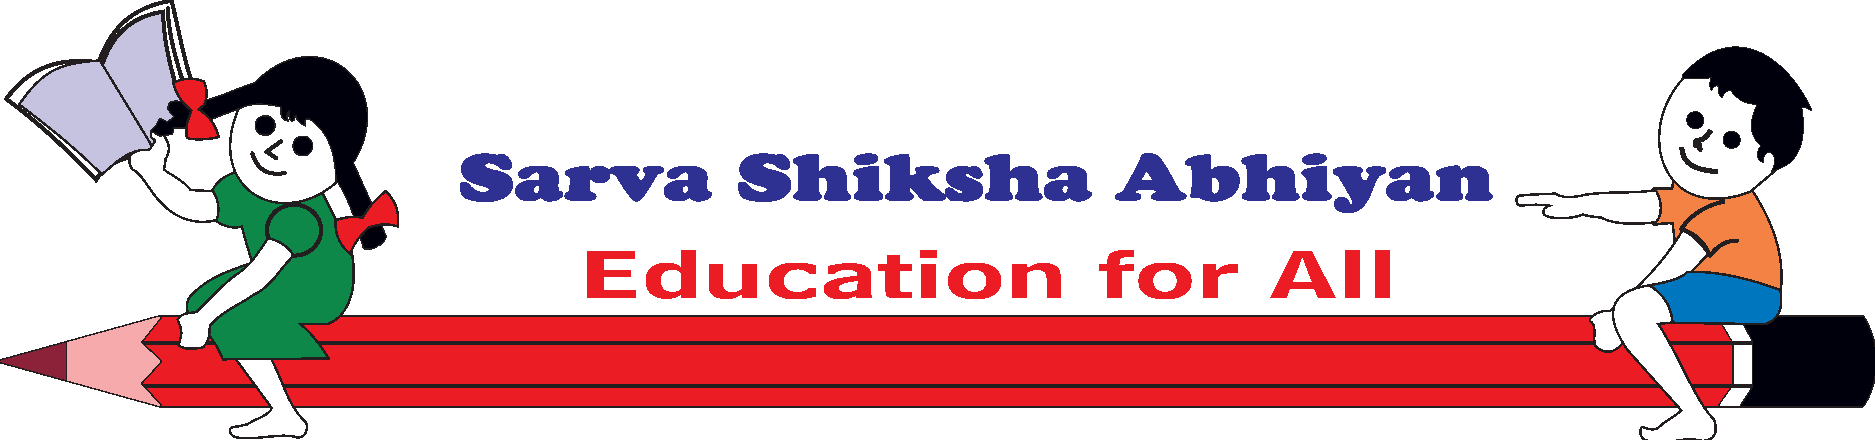 Sarva Shiksha Abhiyan Logo Vector - (.Ai .PNG .SVG .EPS Free Download)